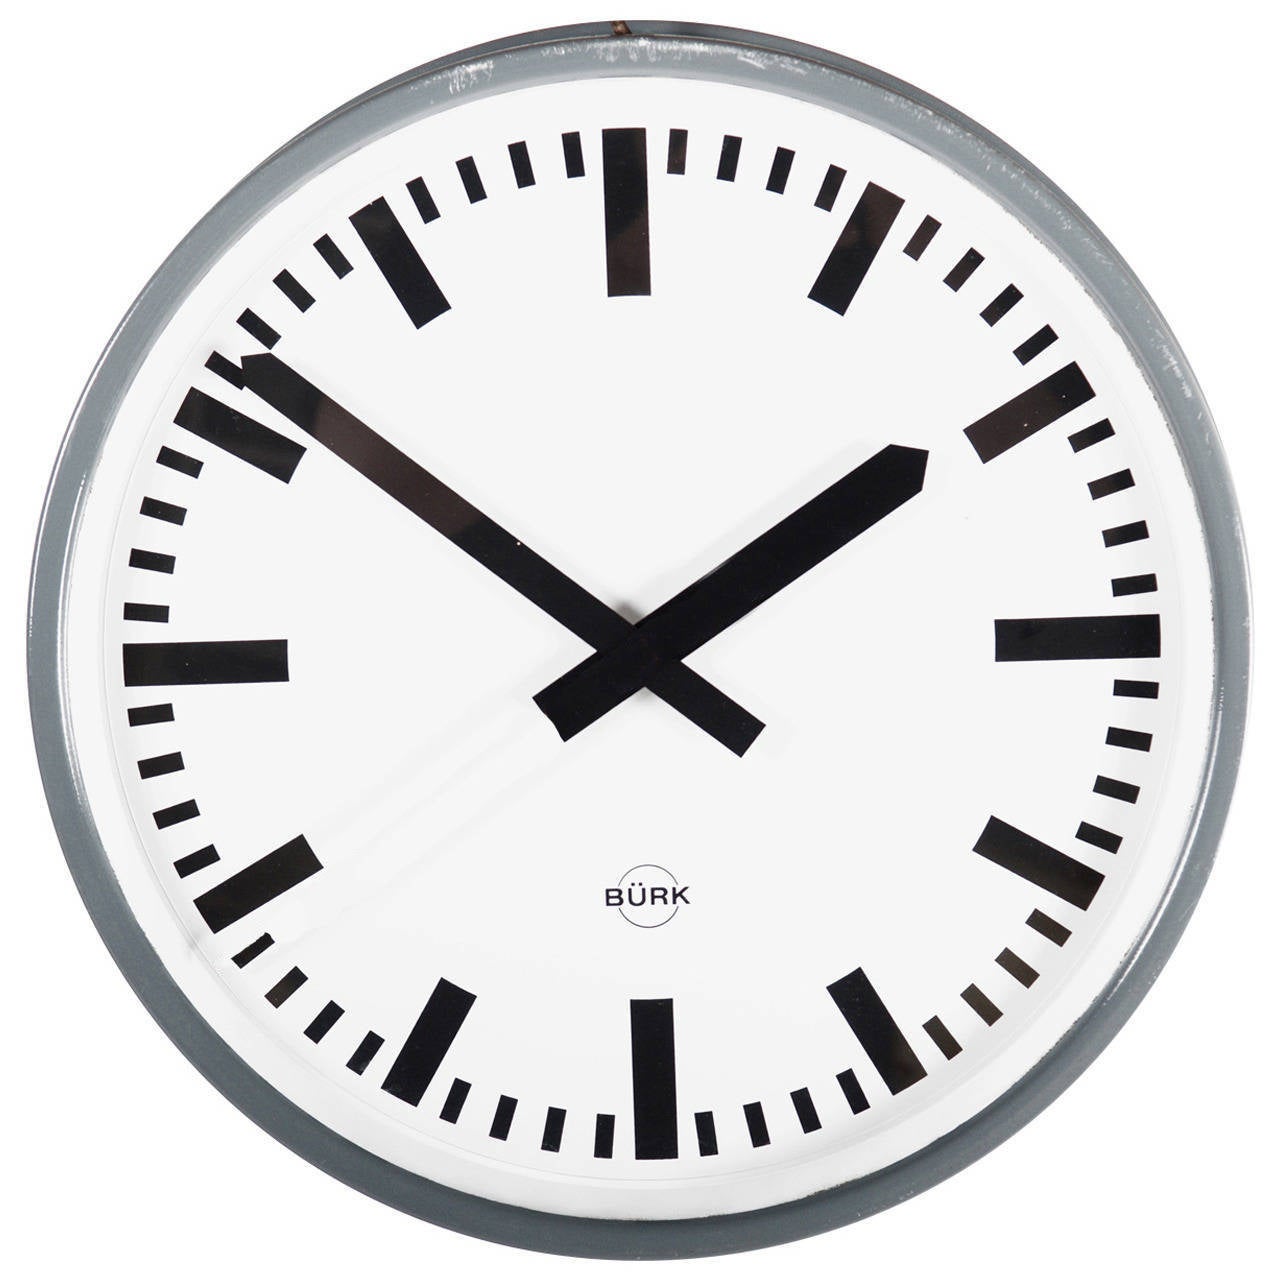 Steel Large German Industrial Clock, Labeled Bürk